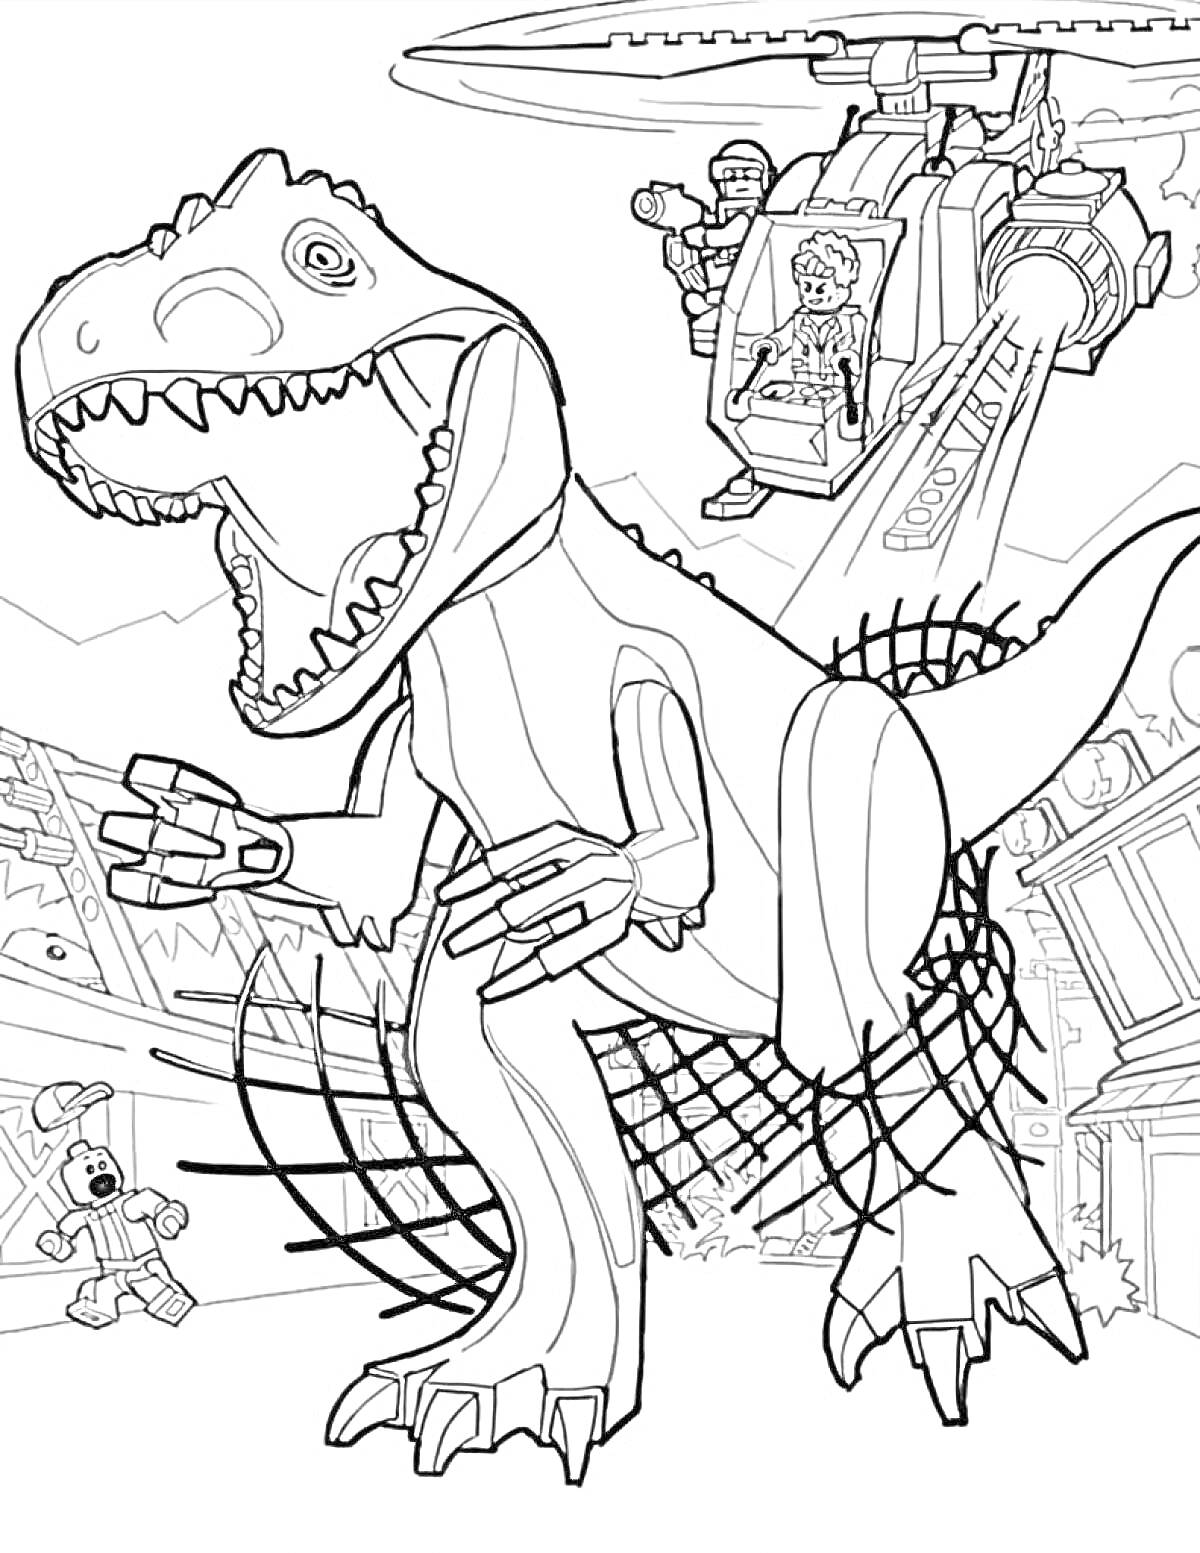 Раскраска Динозавр Тираннозавр Рекс, вертолет с фигурками людей, сети, рельсы, разрушающиеся здания.